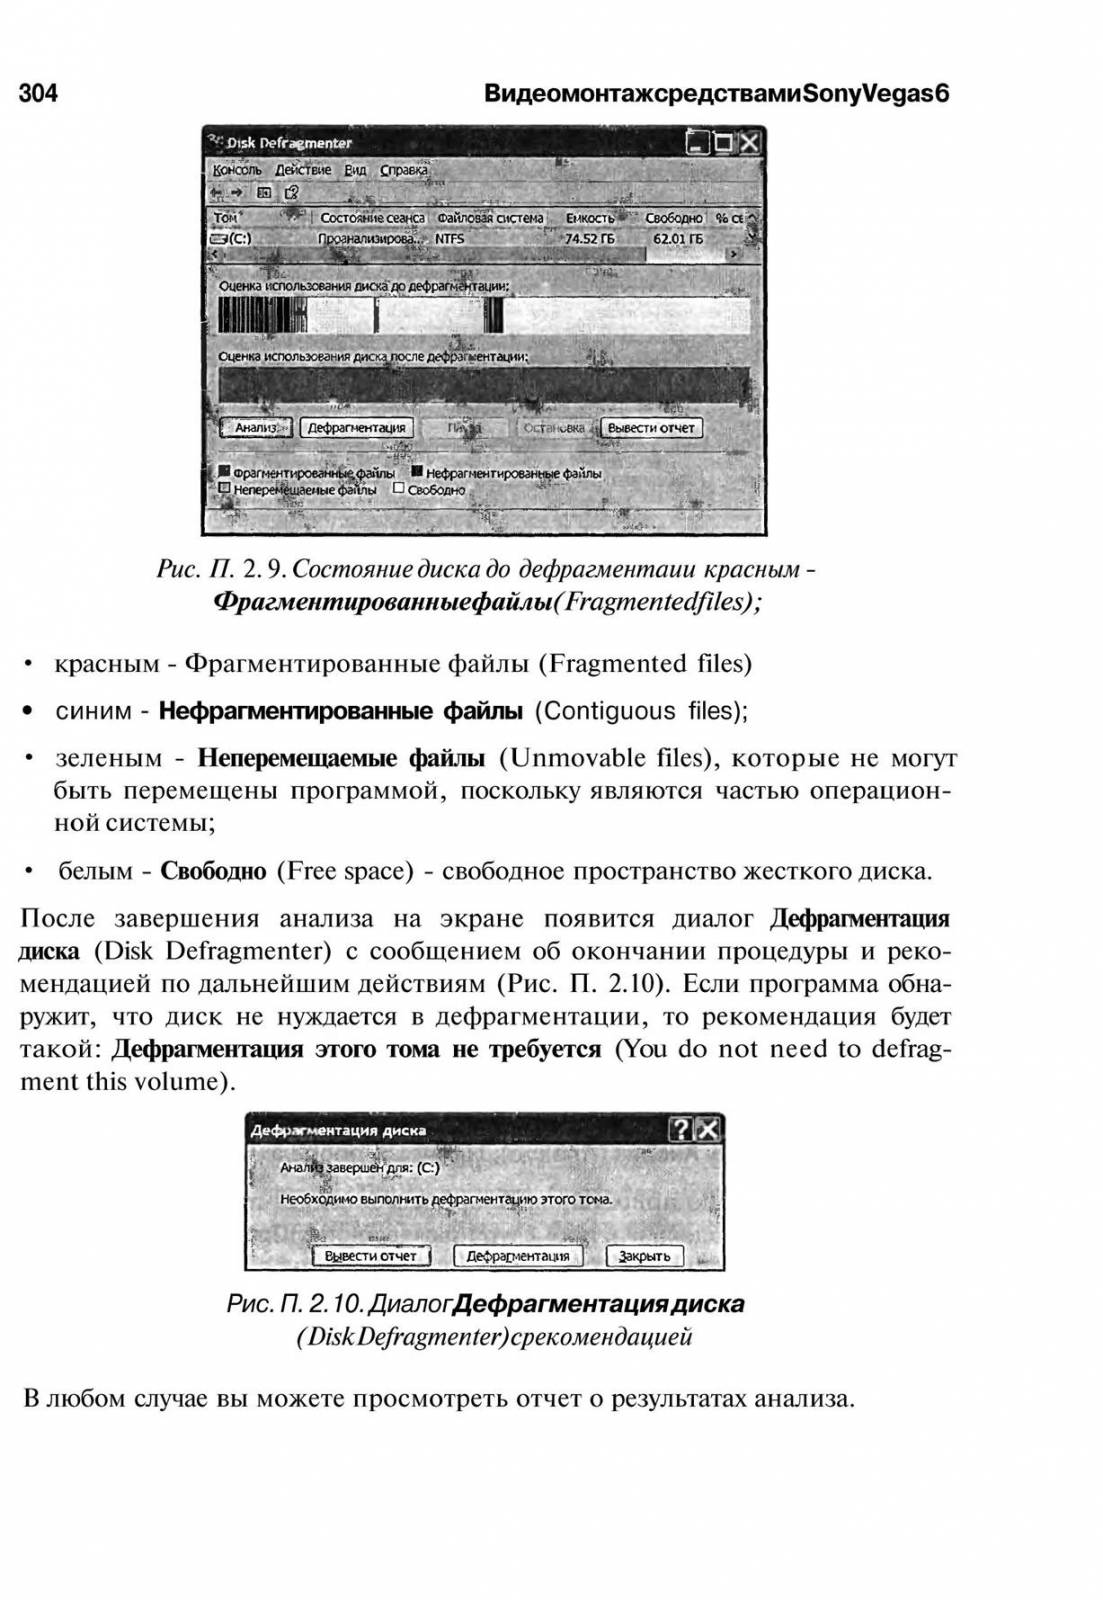 http://redaktori-uroki.3dn.ru/_ph/14/292294412.jpg